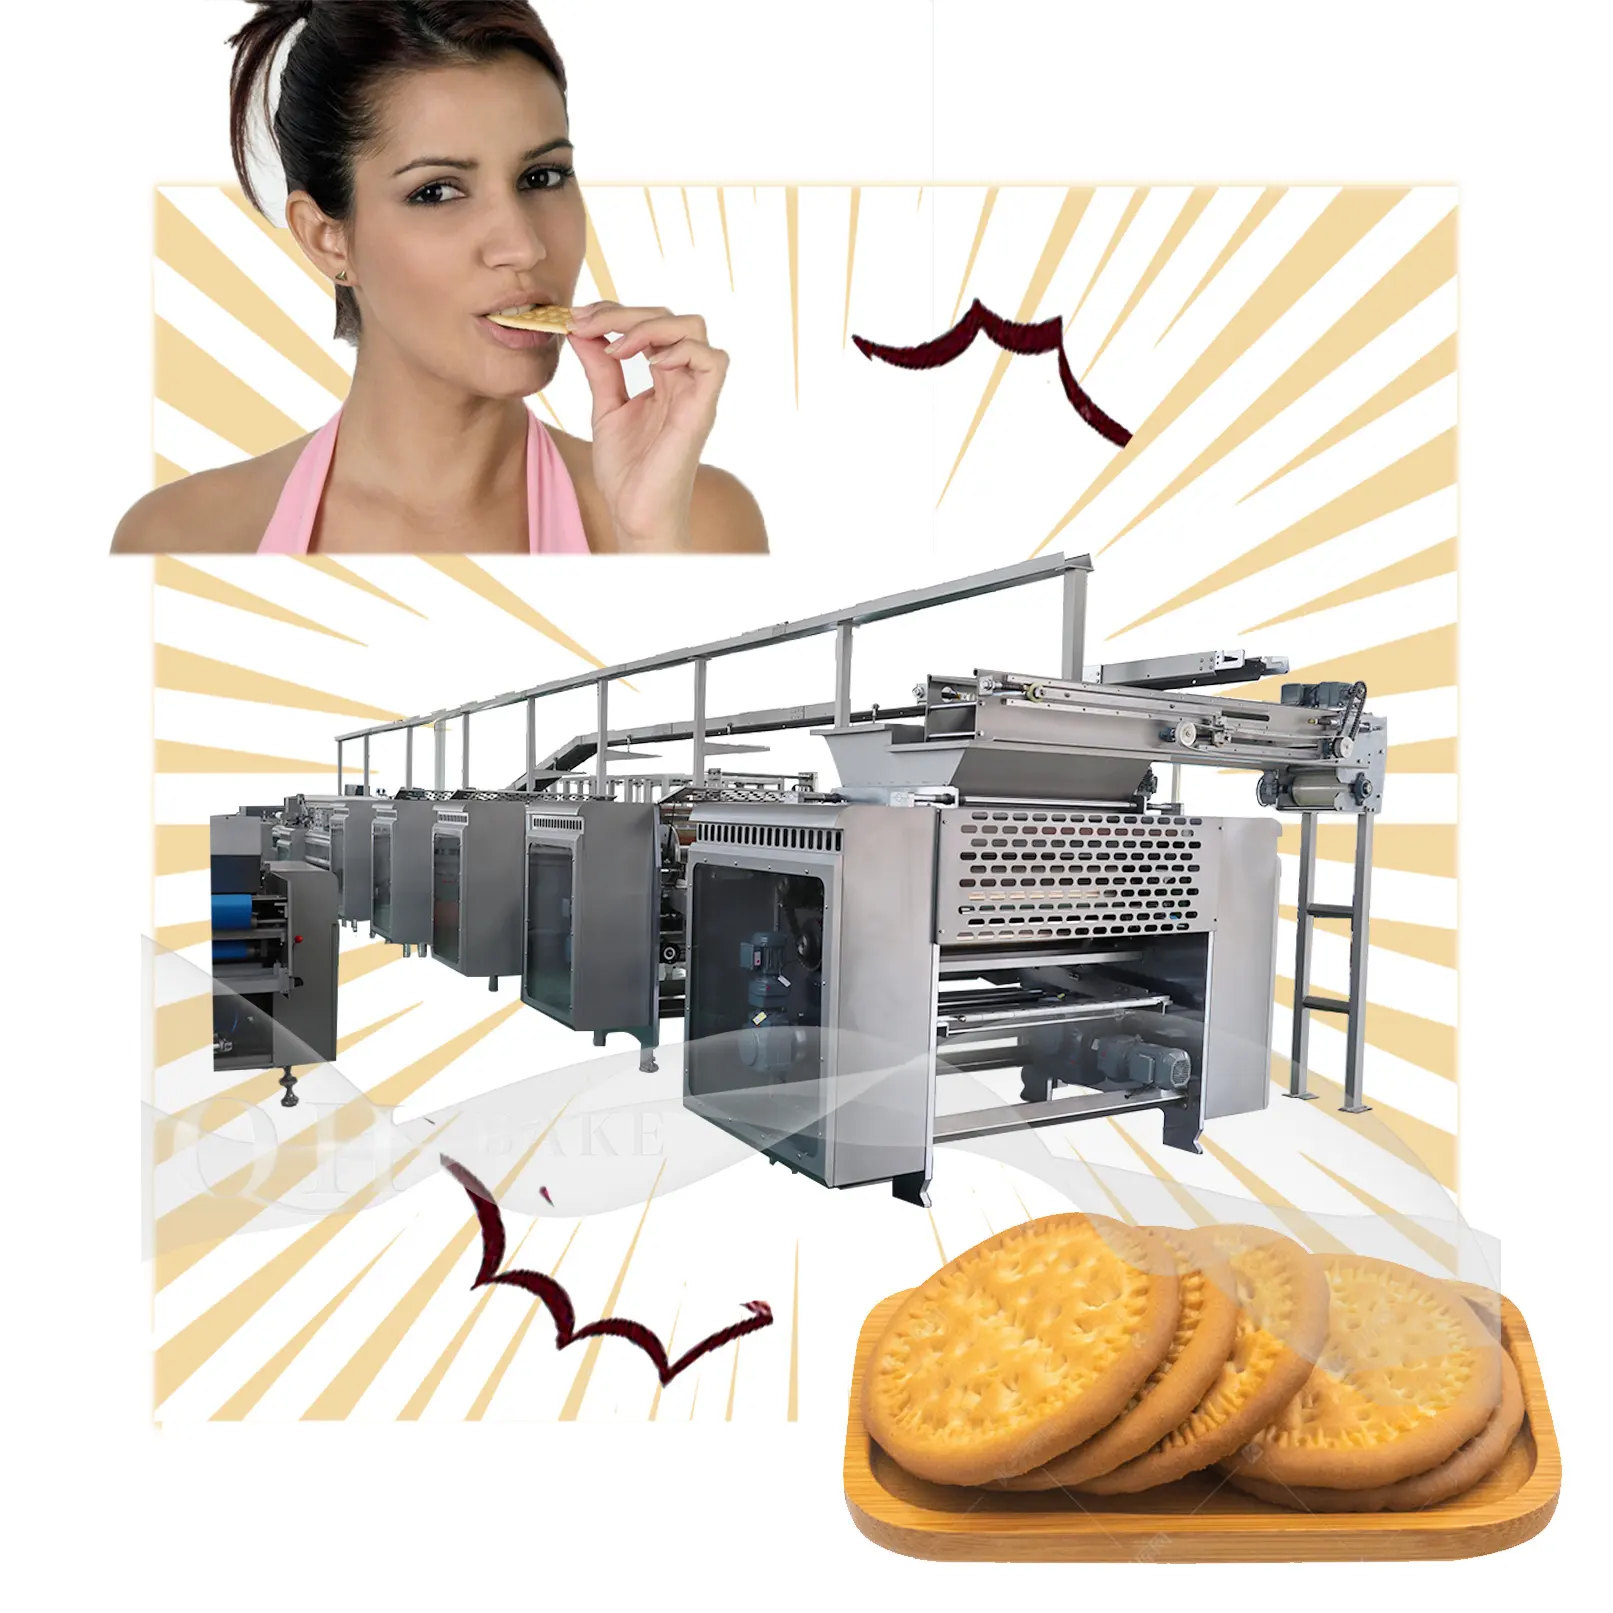 Tam otomatik çok fonksiyonlu sert yumuşak soda bisküvi kraker üretim hattı bisküvi yapma makinesi üreticisi fabrika